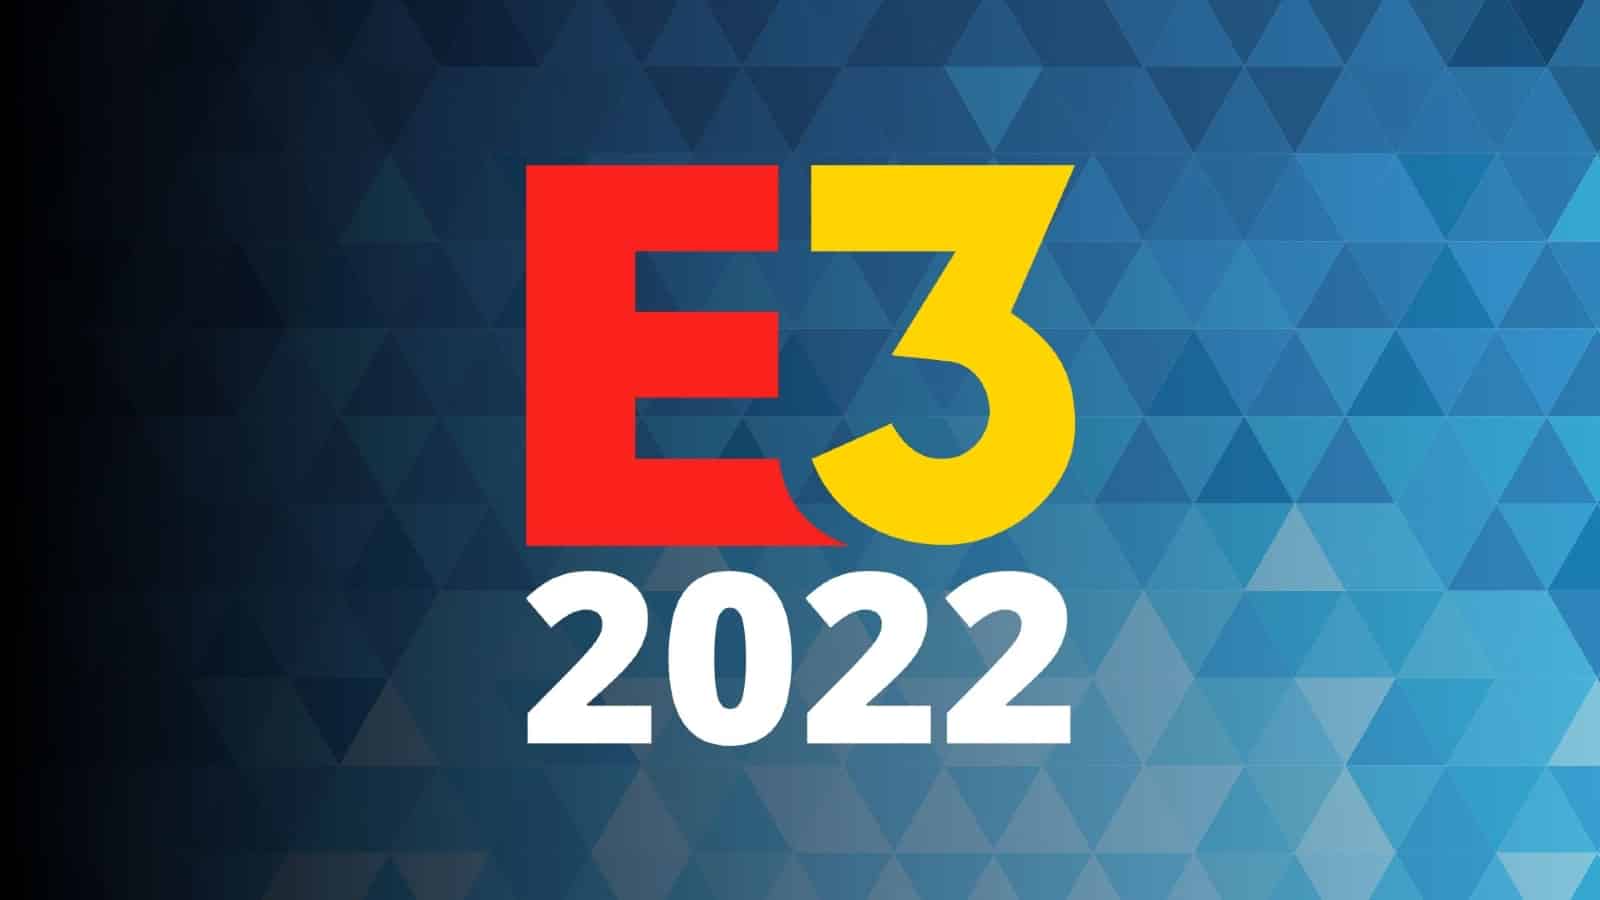 Targi E3 2022 zostały odwołane, zarówno fizycznie, jak i online na Xbox One